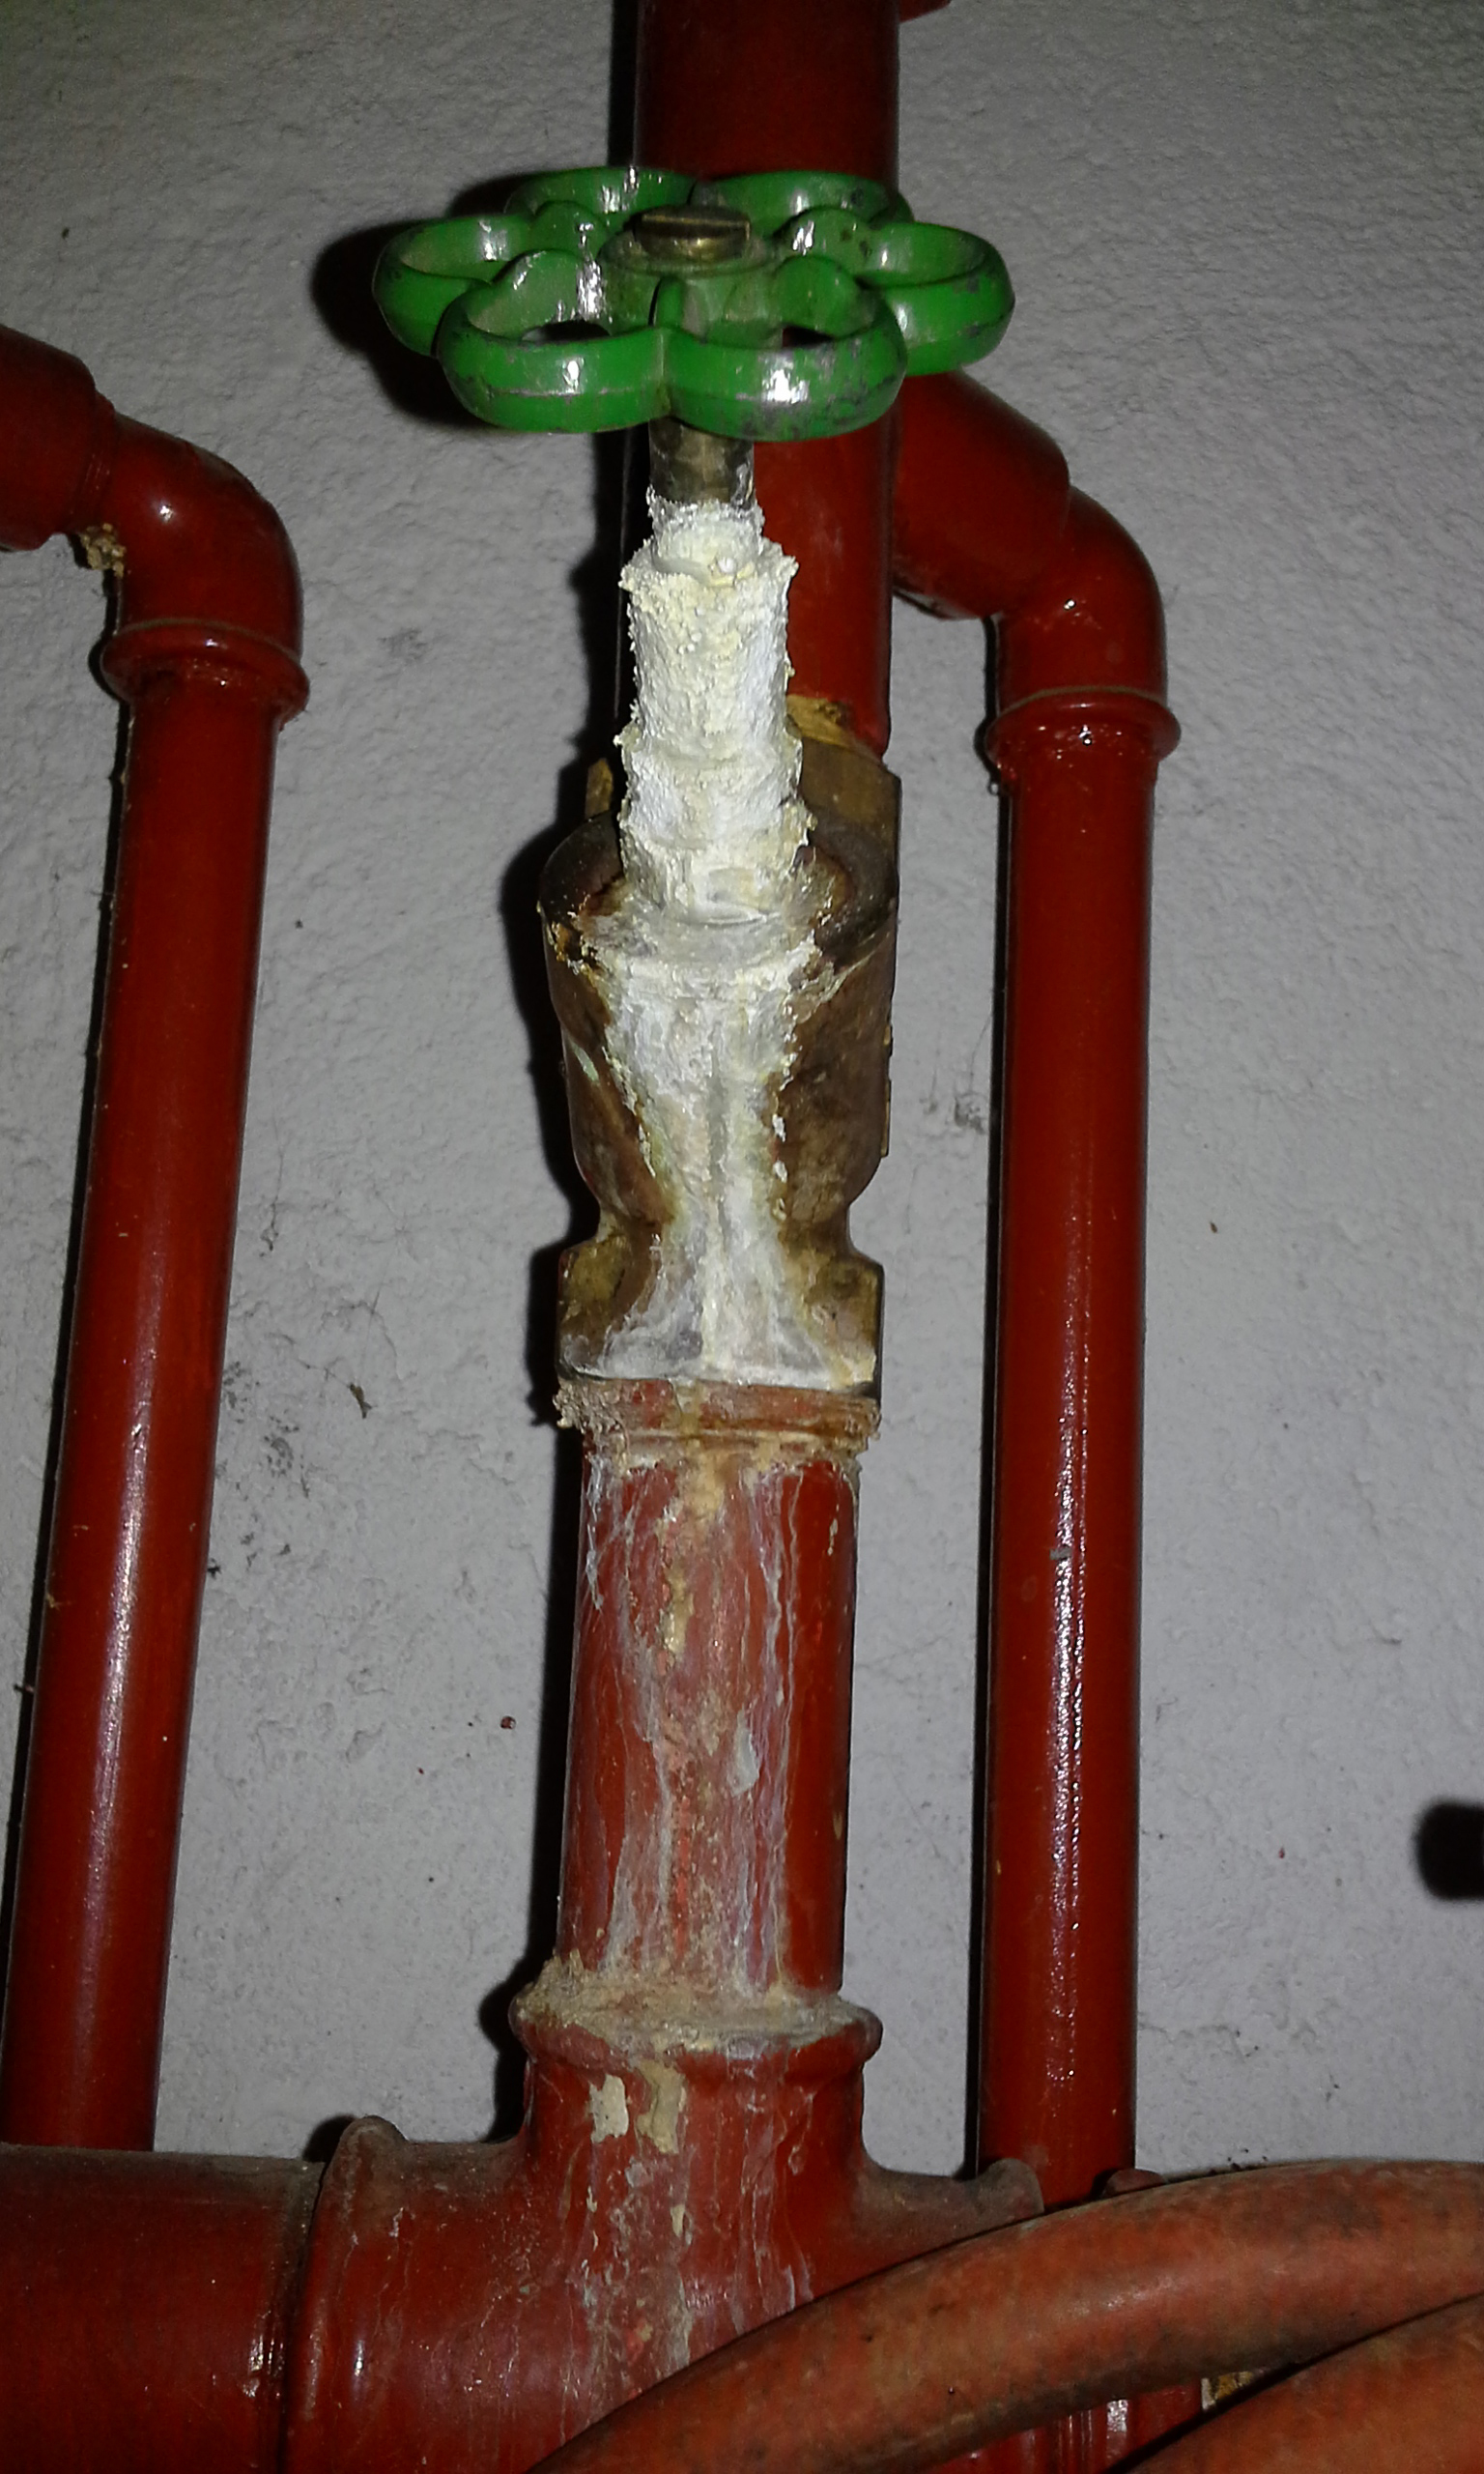 Handlungsbedraf - Rohrleitungen und Wasserfilter